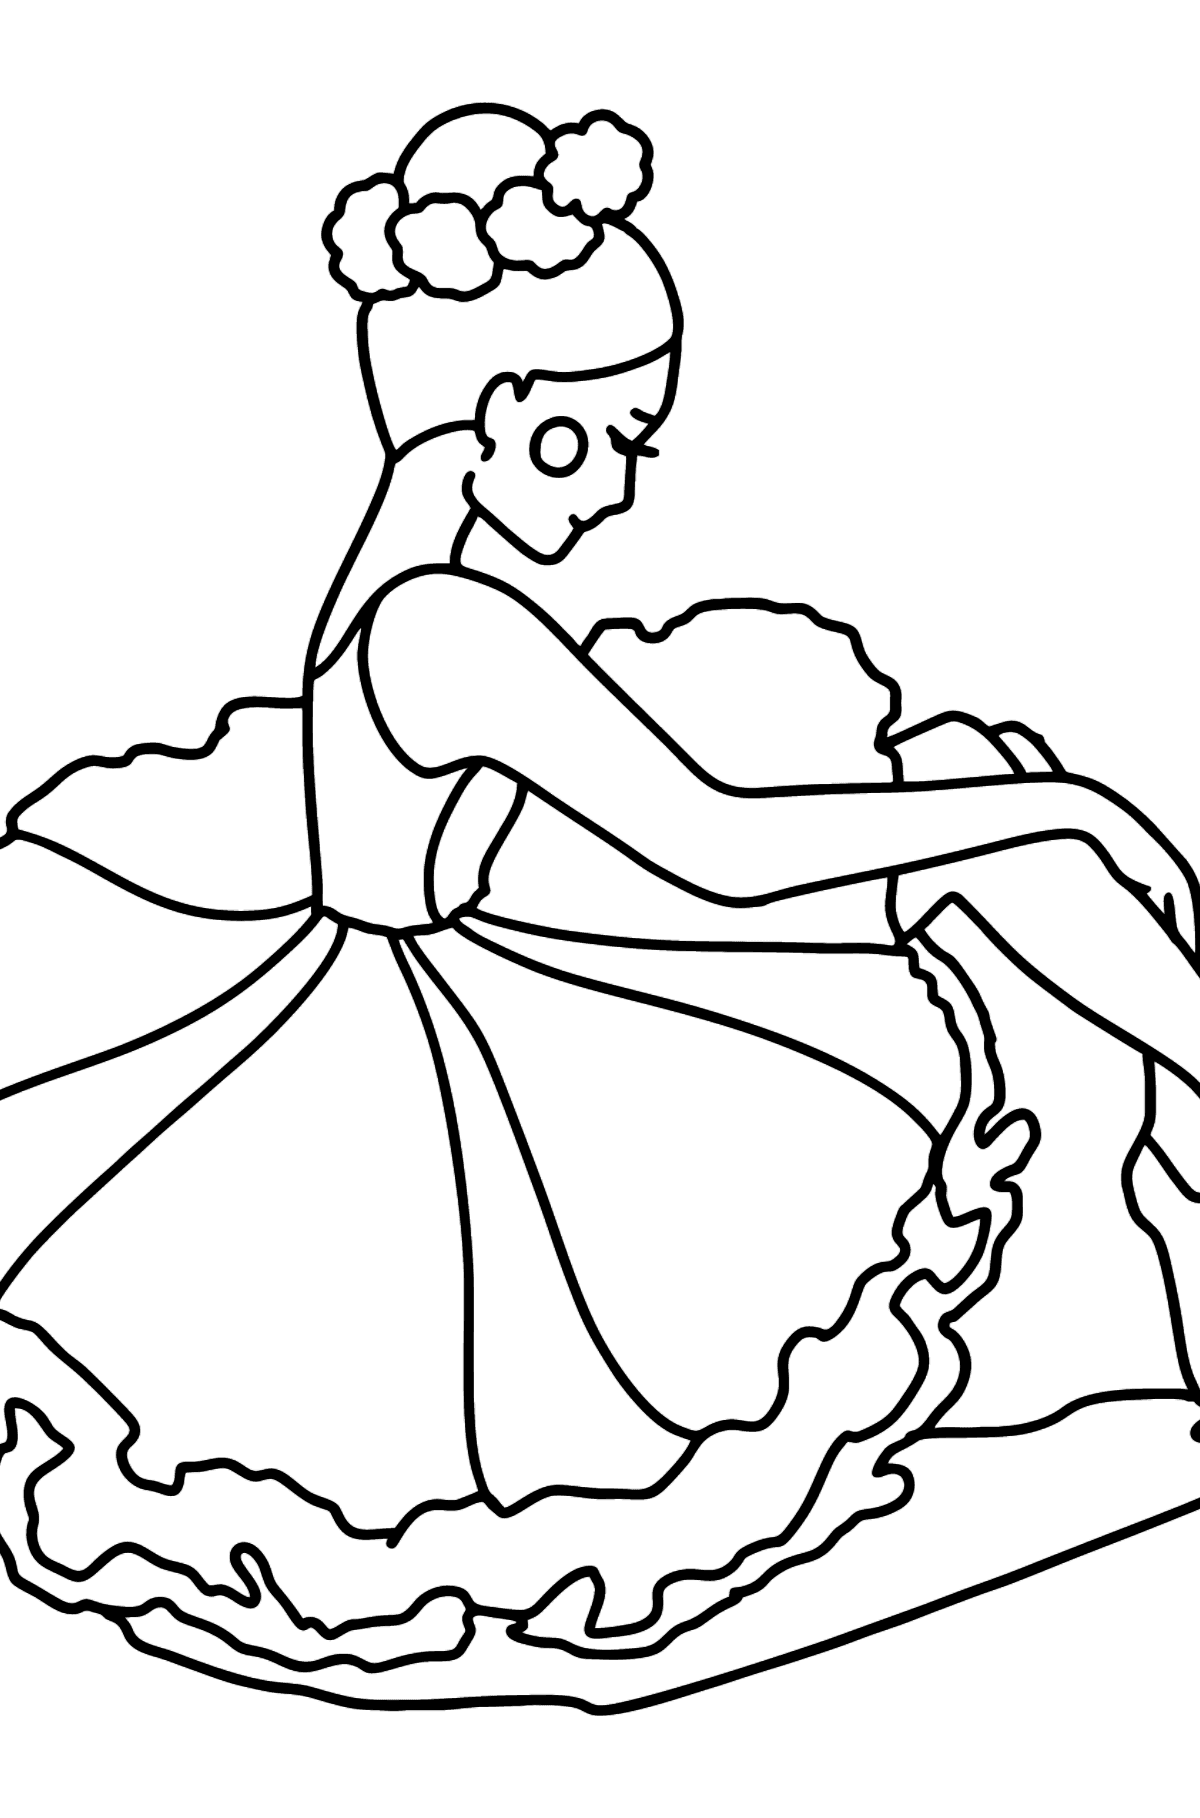 Dibujo para colorear - Bailarina con un vestido magnífico - Dibujos para Colorear para Niños